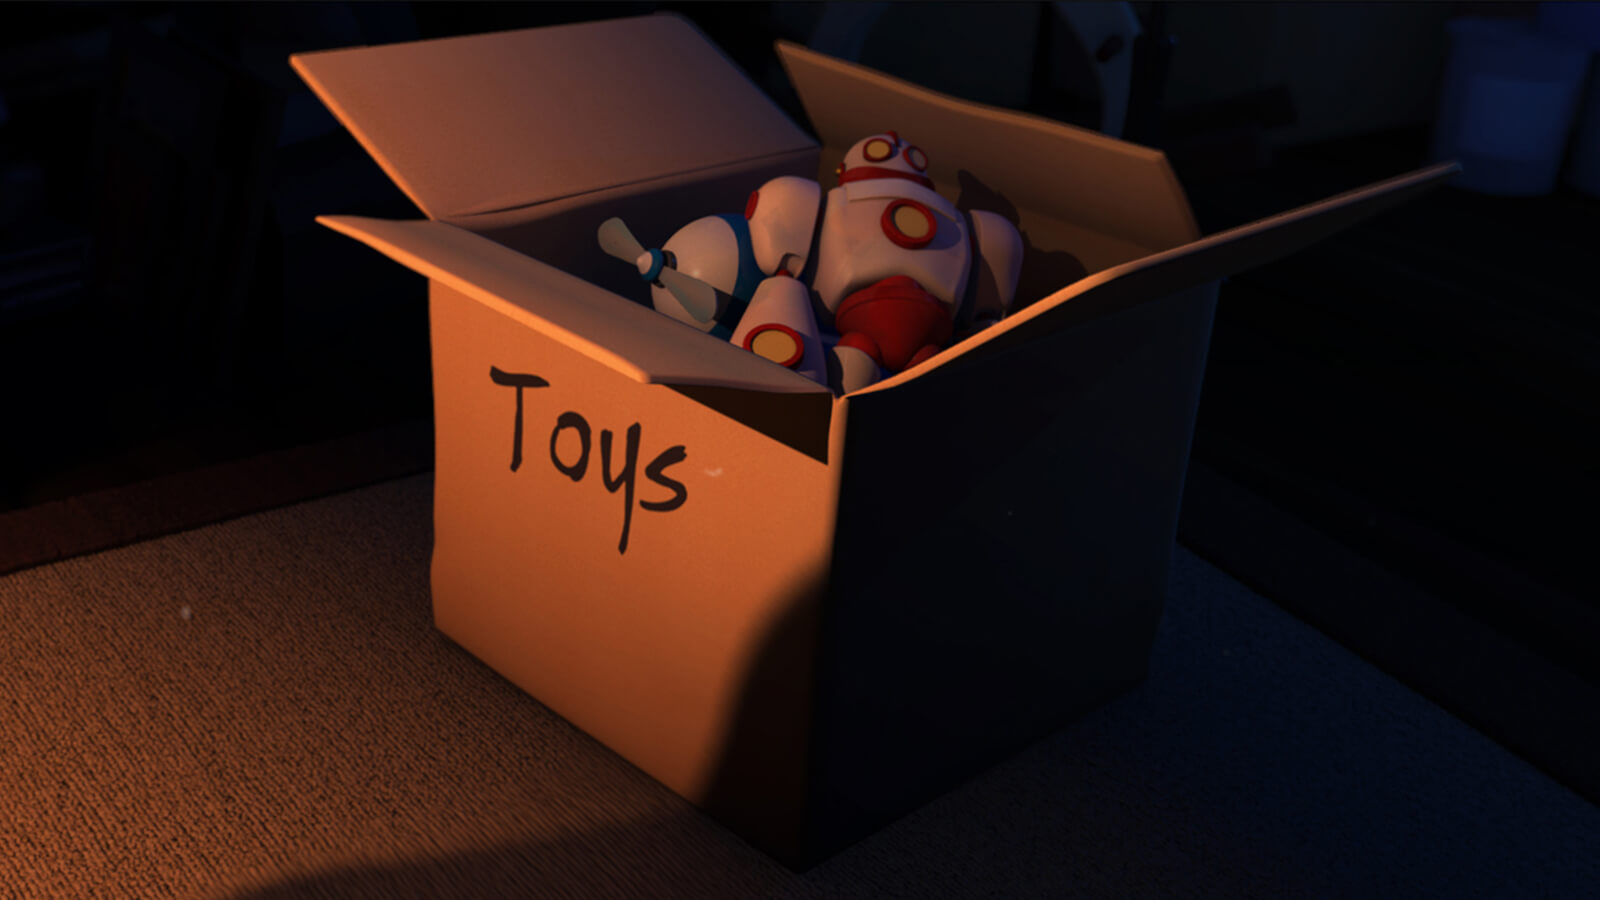 Una caja de cartón en una habitación oscura de lado. Su interior contiene jueguetes de plástico y por fuera tiene la palabra "toys" escrita.